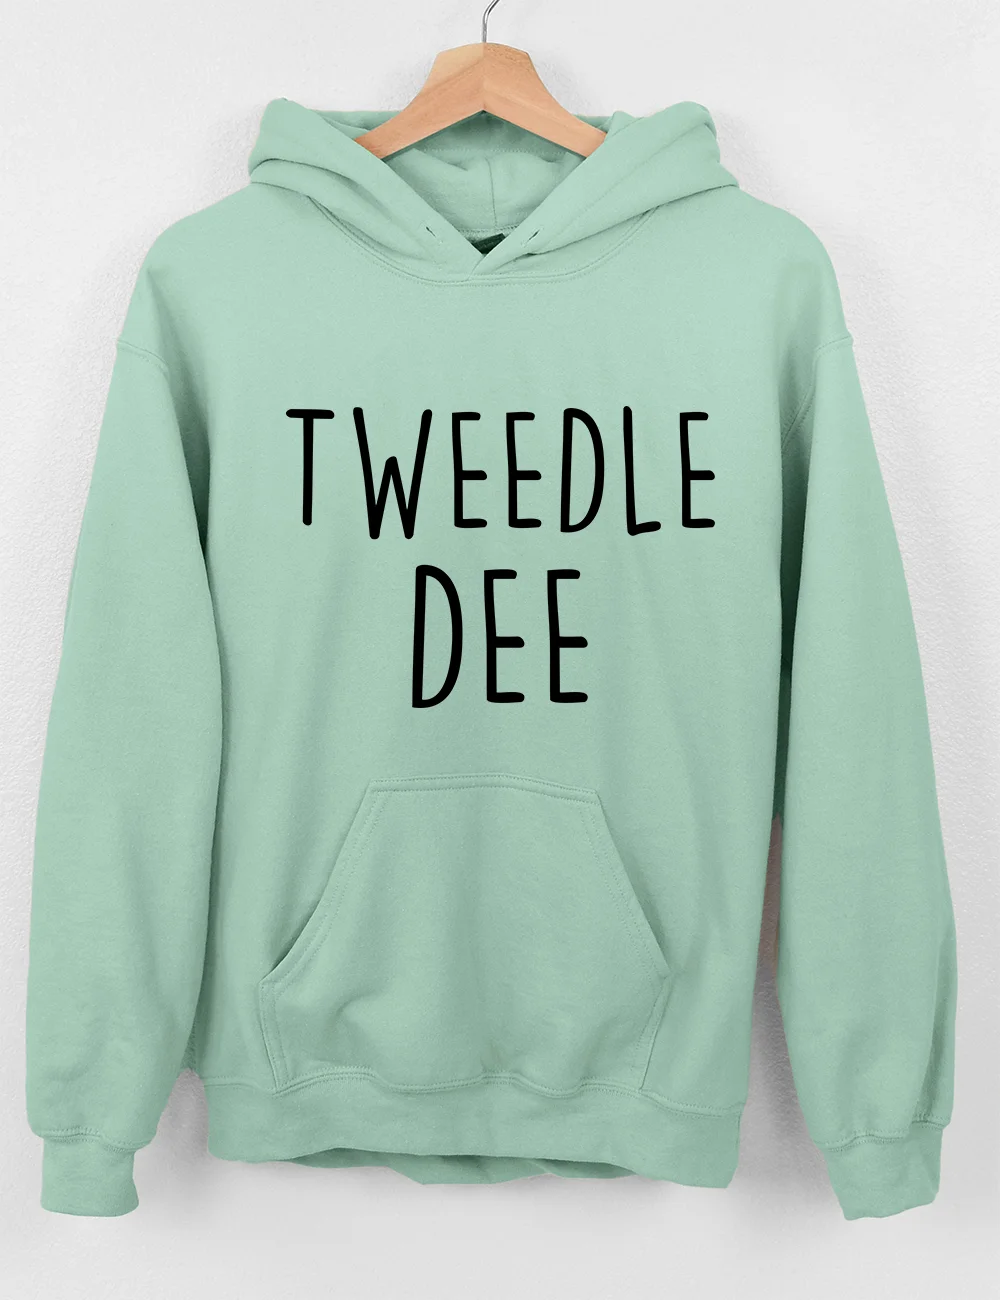 Tweedle Dee/Tweedle Dumbass Hoodie